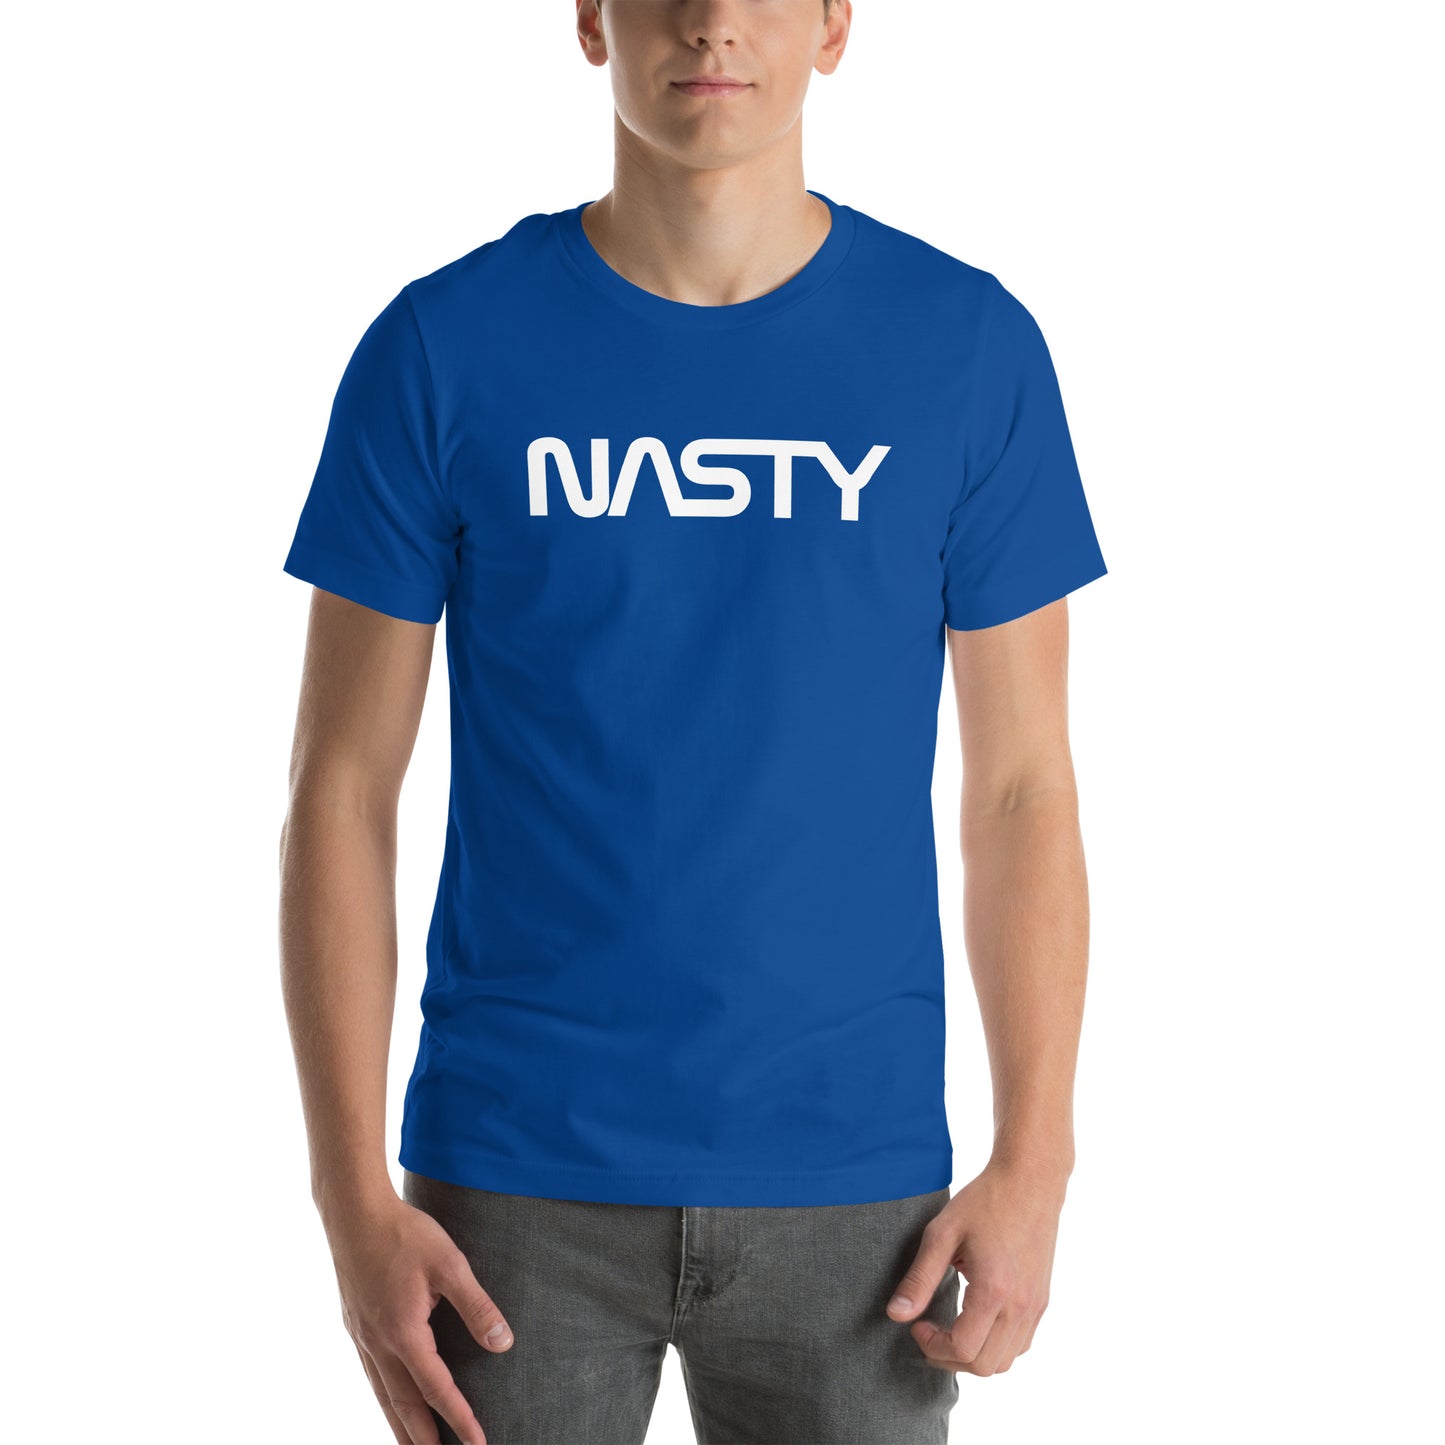 NASTY white logo unisex shirt